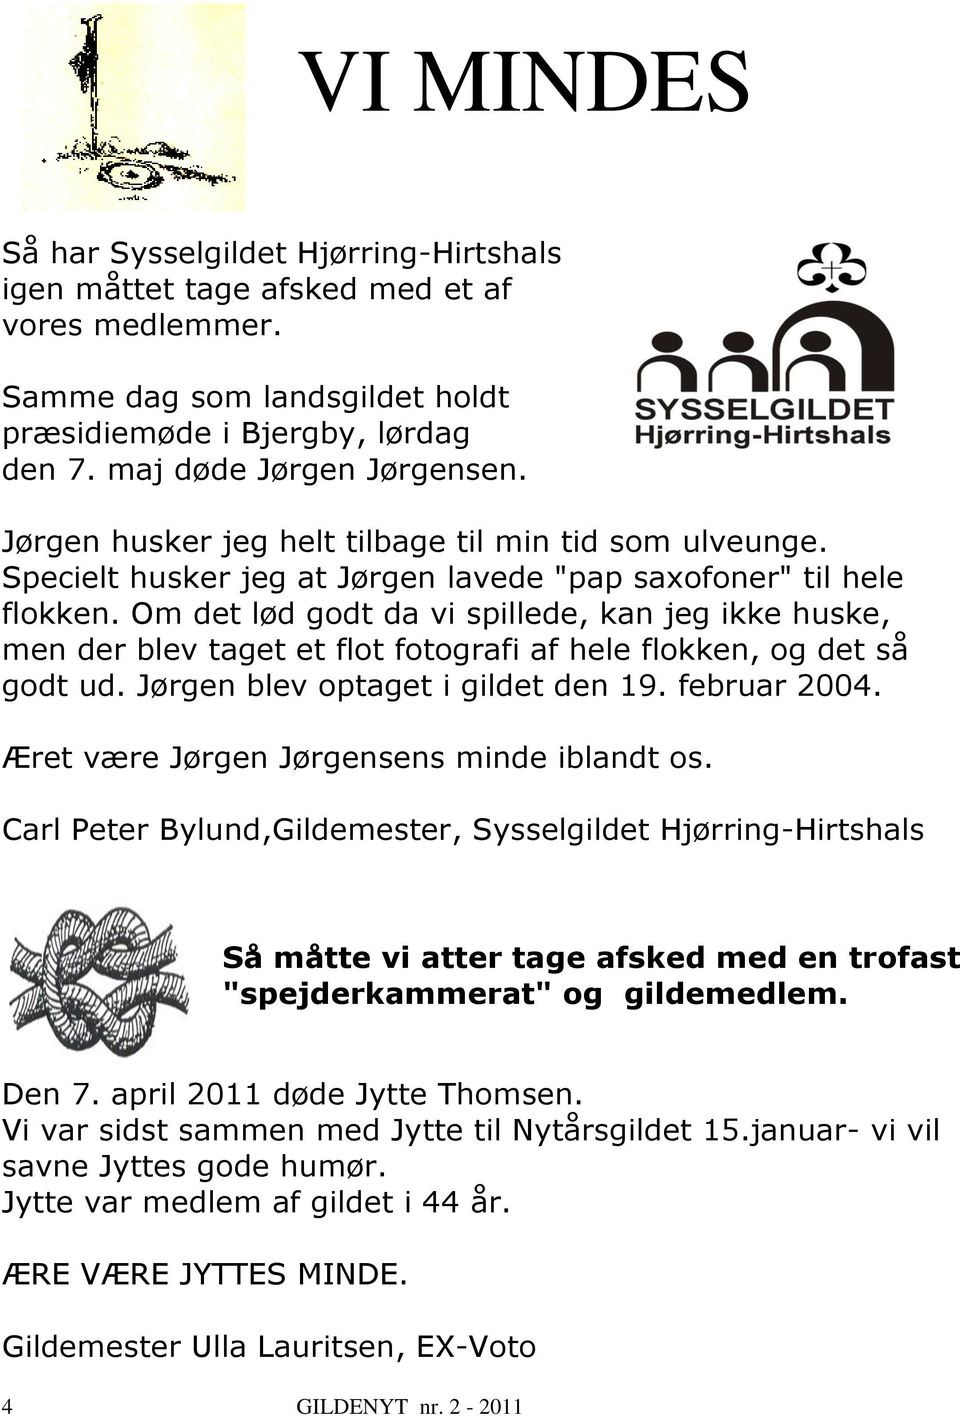 Om det lød godt da vi spillede, kan jeg ikke huske, men der blev taget et flot fotografi af hele flokken, og det så godt ud. Jørgen blev optaget i gildet den 19. februar 2004.